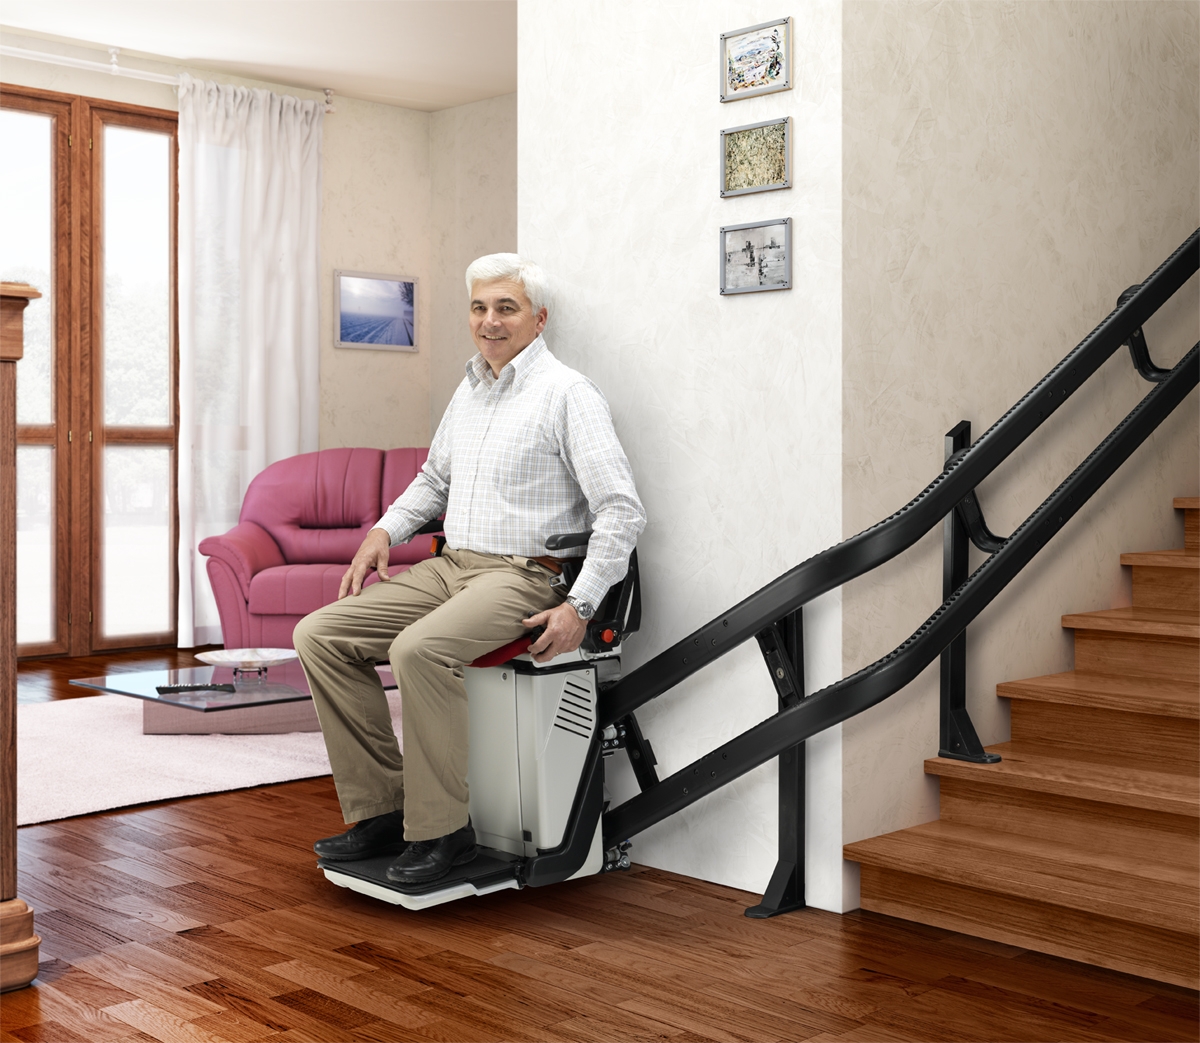 В скромно обставленном кабинете сидел пожилой человек. Кресельный подъемник для инвалидов по лестнице. Лестничные подъемники для пожилых людей. Подъемник на лестницу для пожилых. Лифт на лестницу для пожилых.